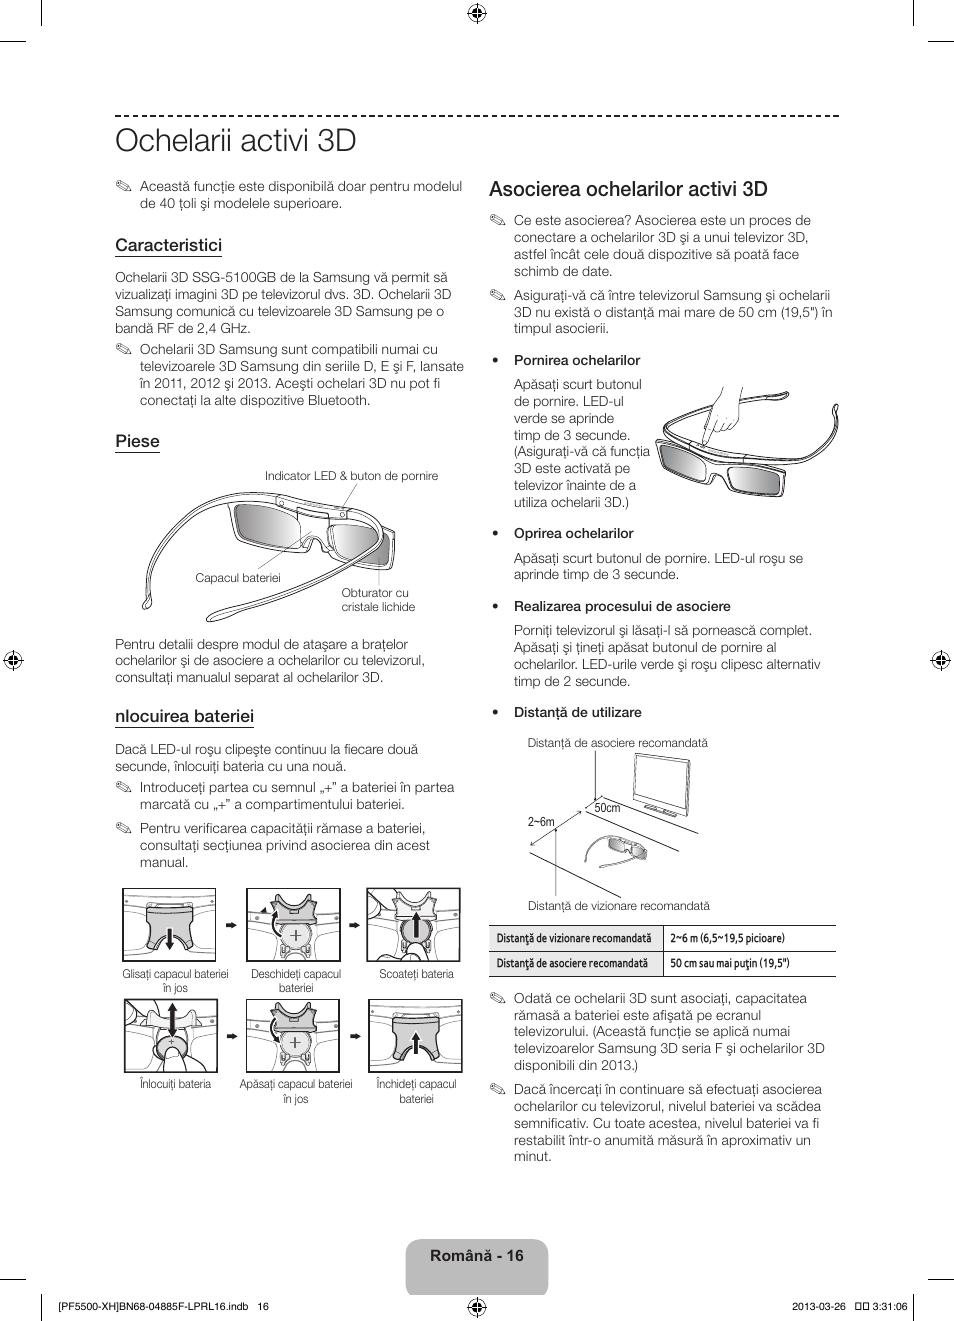 Ochelarii activi 3d, Asocierea ochelarilor activi 3d | Samsung PS60F5500AW  User Manual | Page 208 / 385